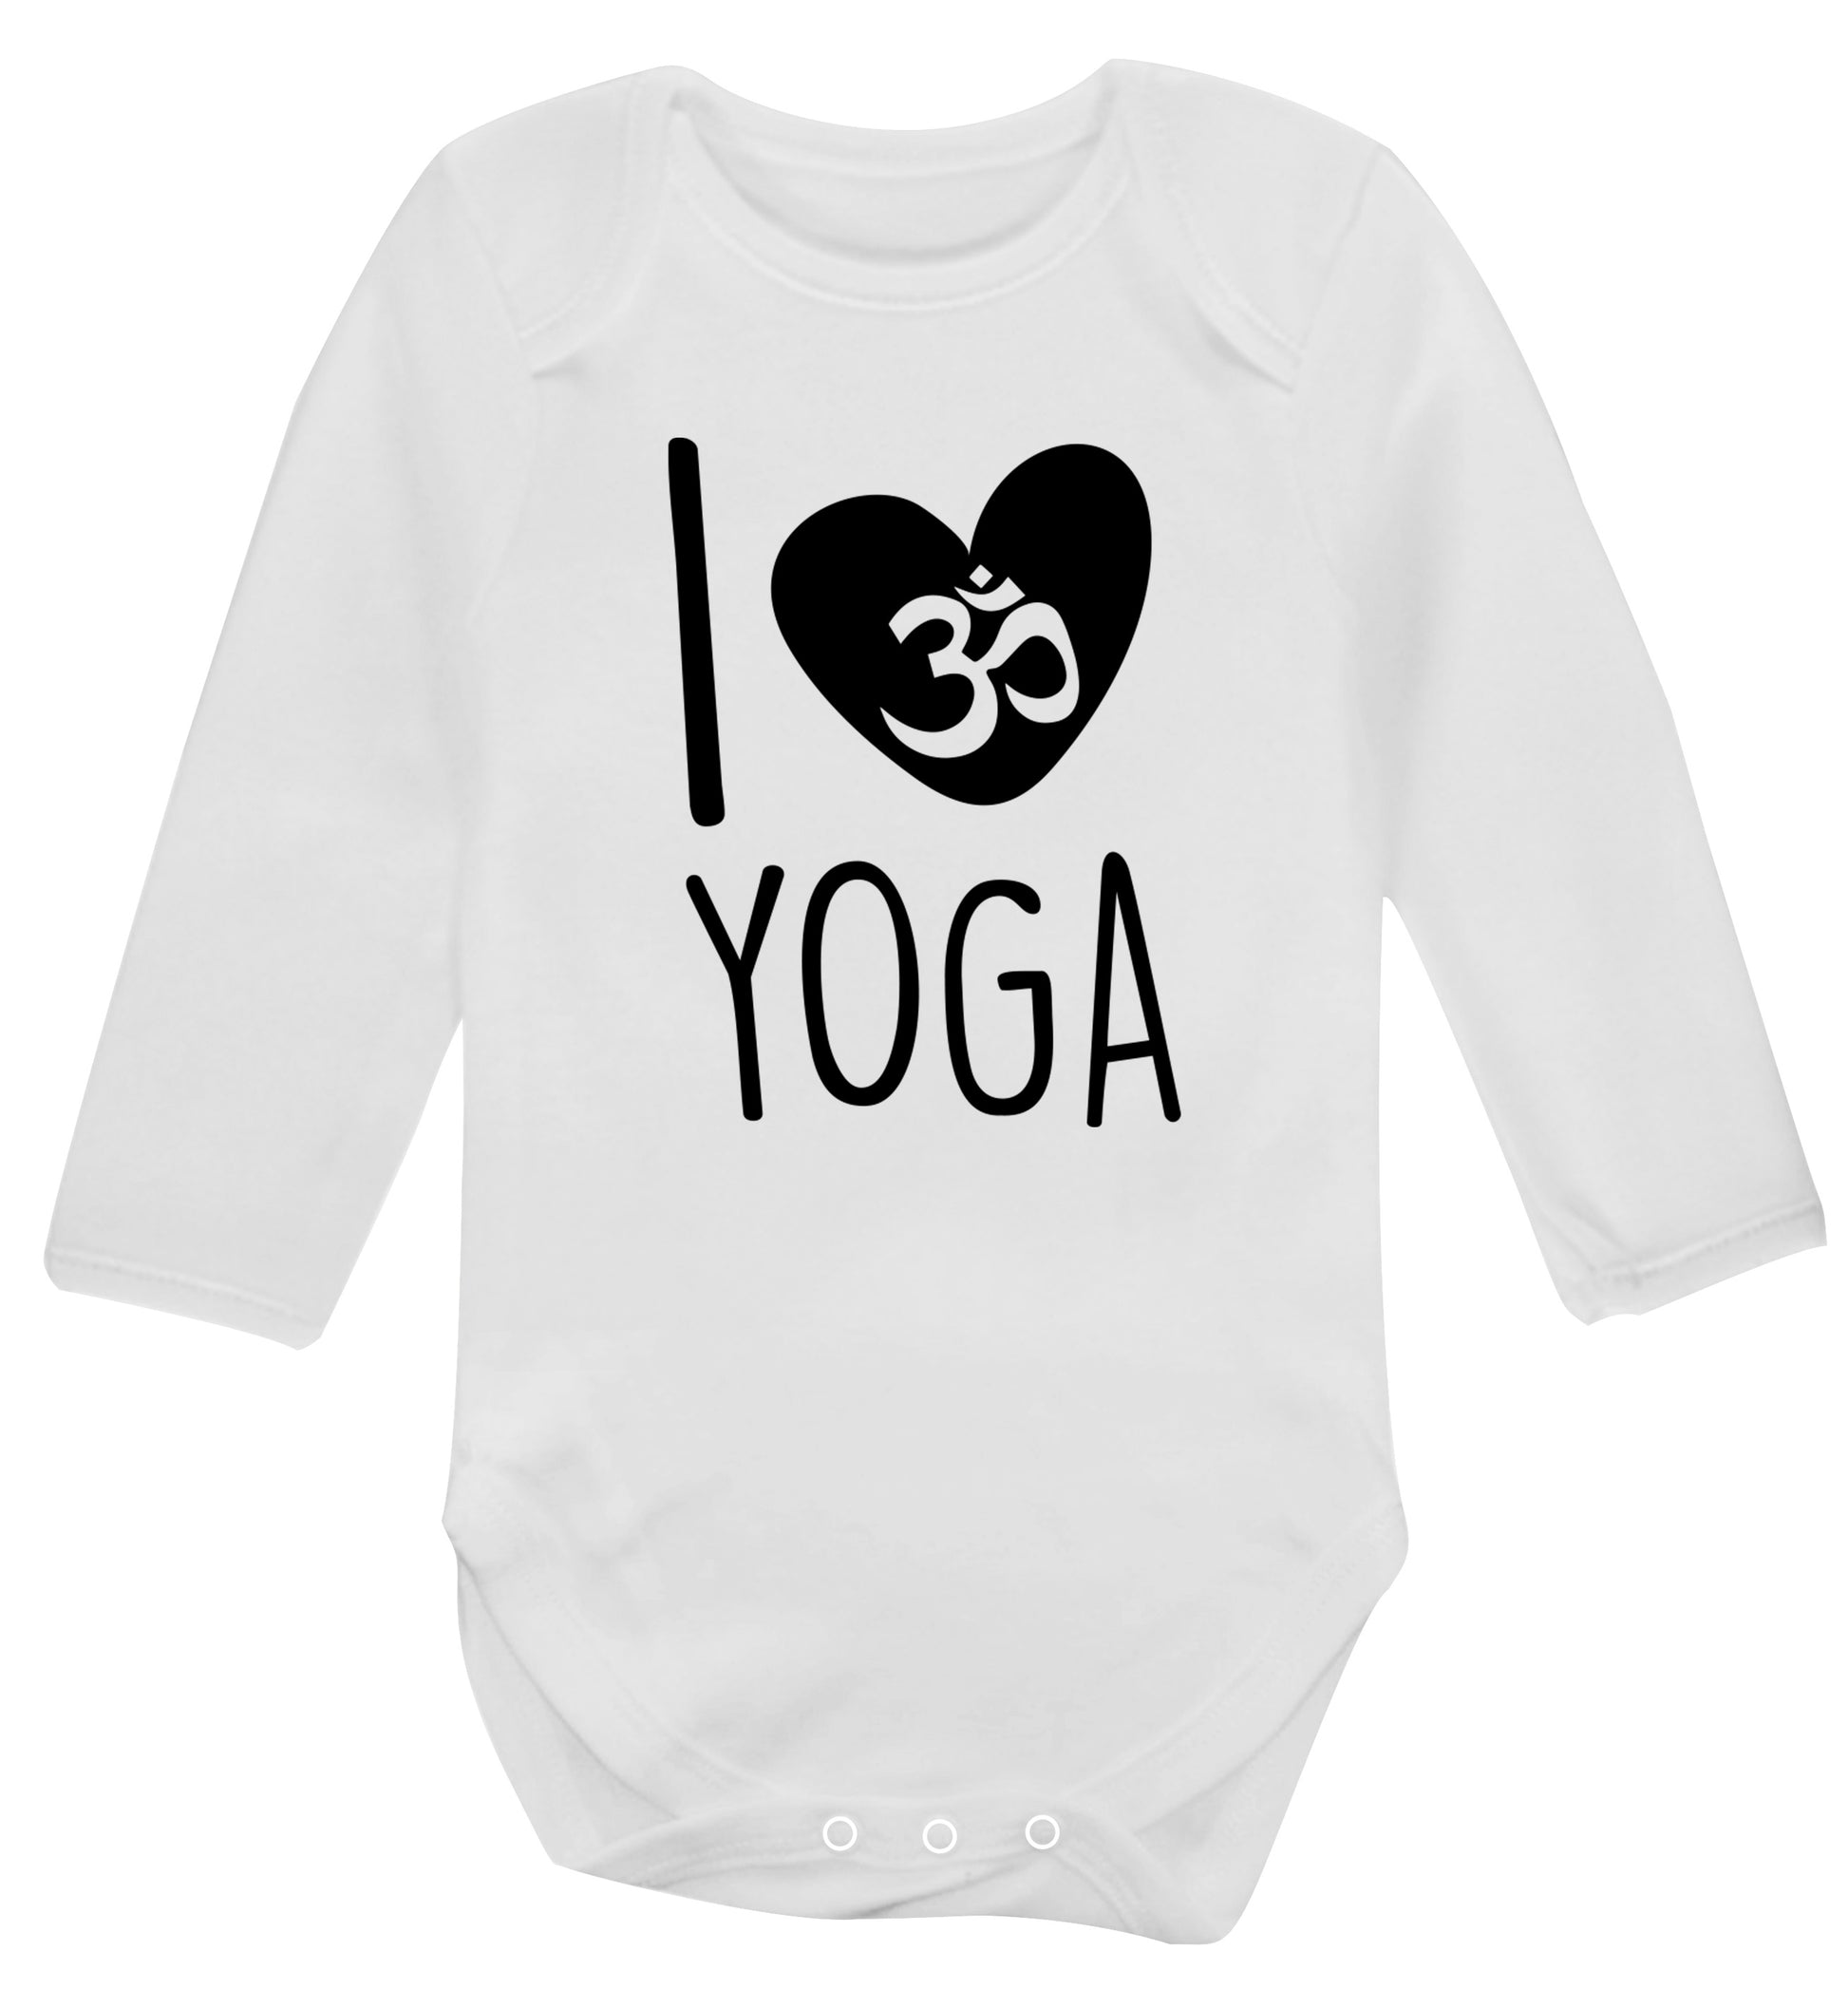 I love yoga Baby Vest long sleeved white 6-12 months